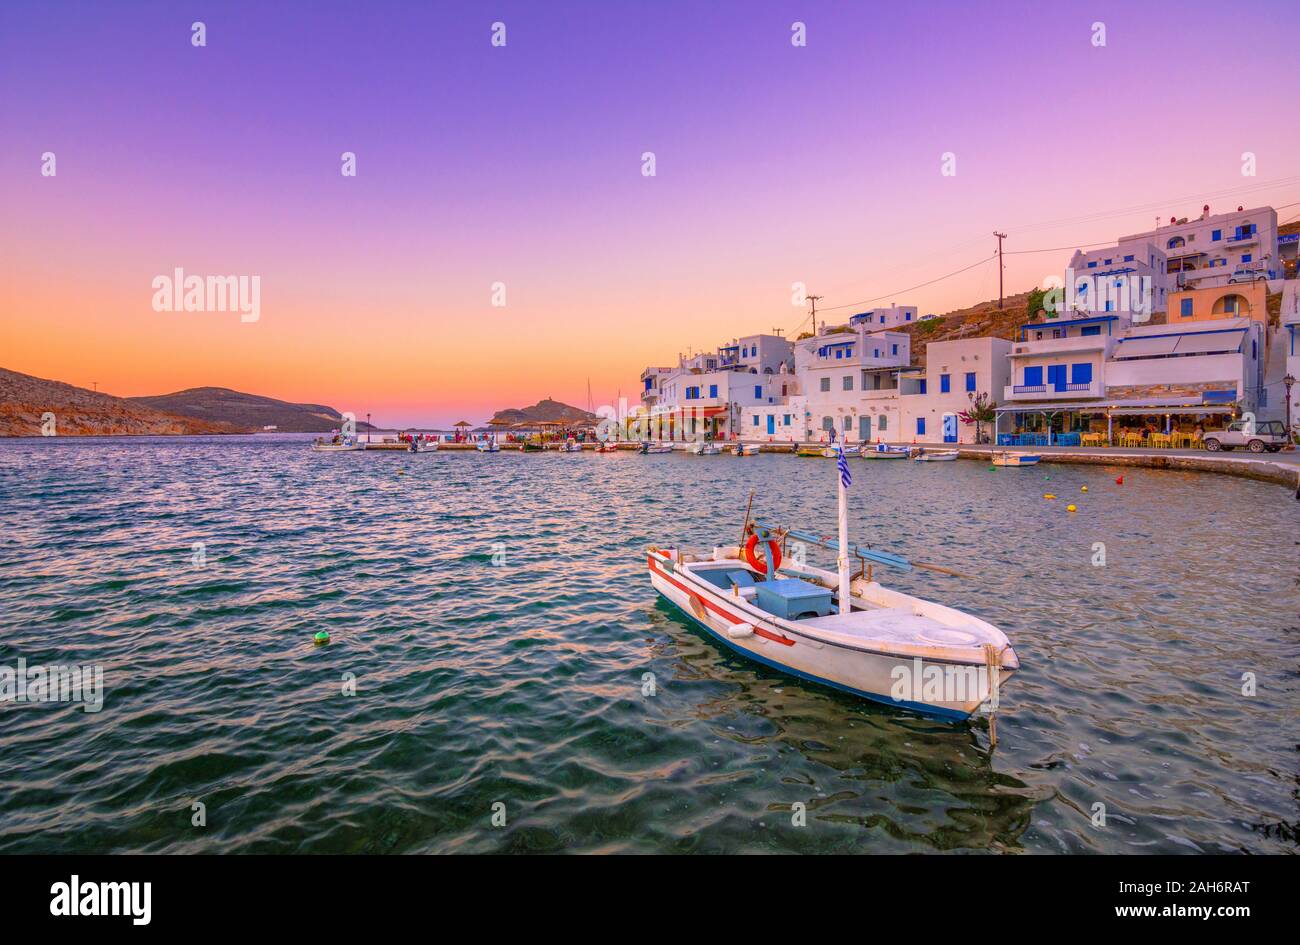 Die kleine ruhige alte Hafen des malerischen Panormos bei Sonnenuntergang, Insel Tinos, Griechenland. Stockfoto